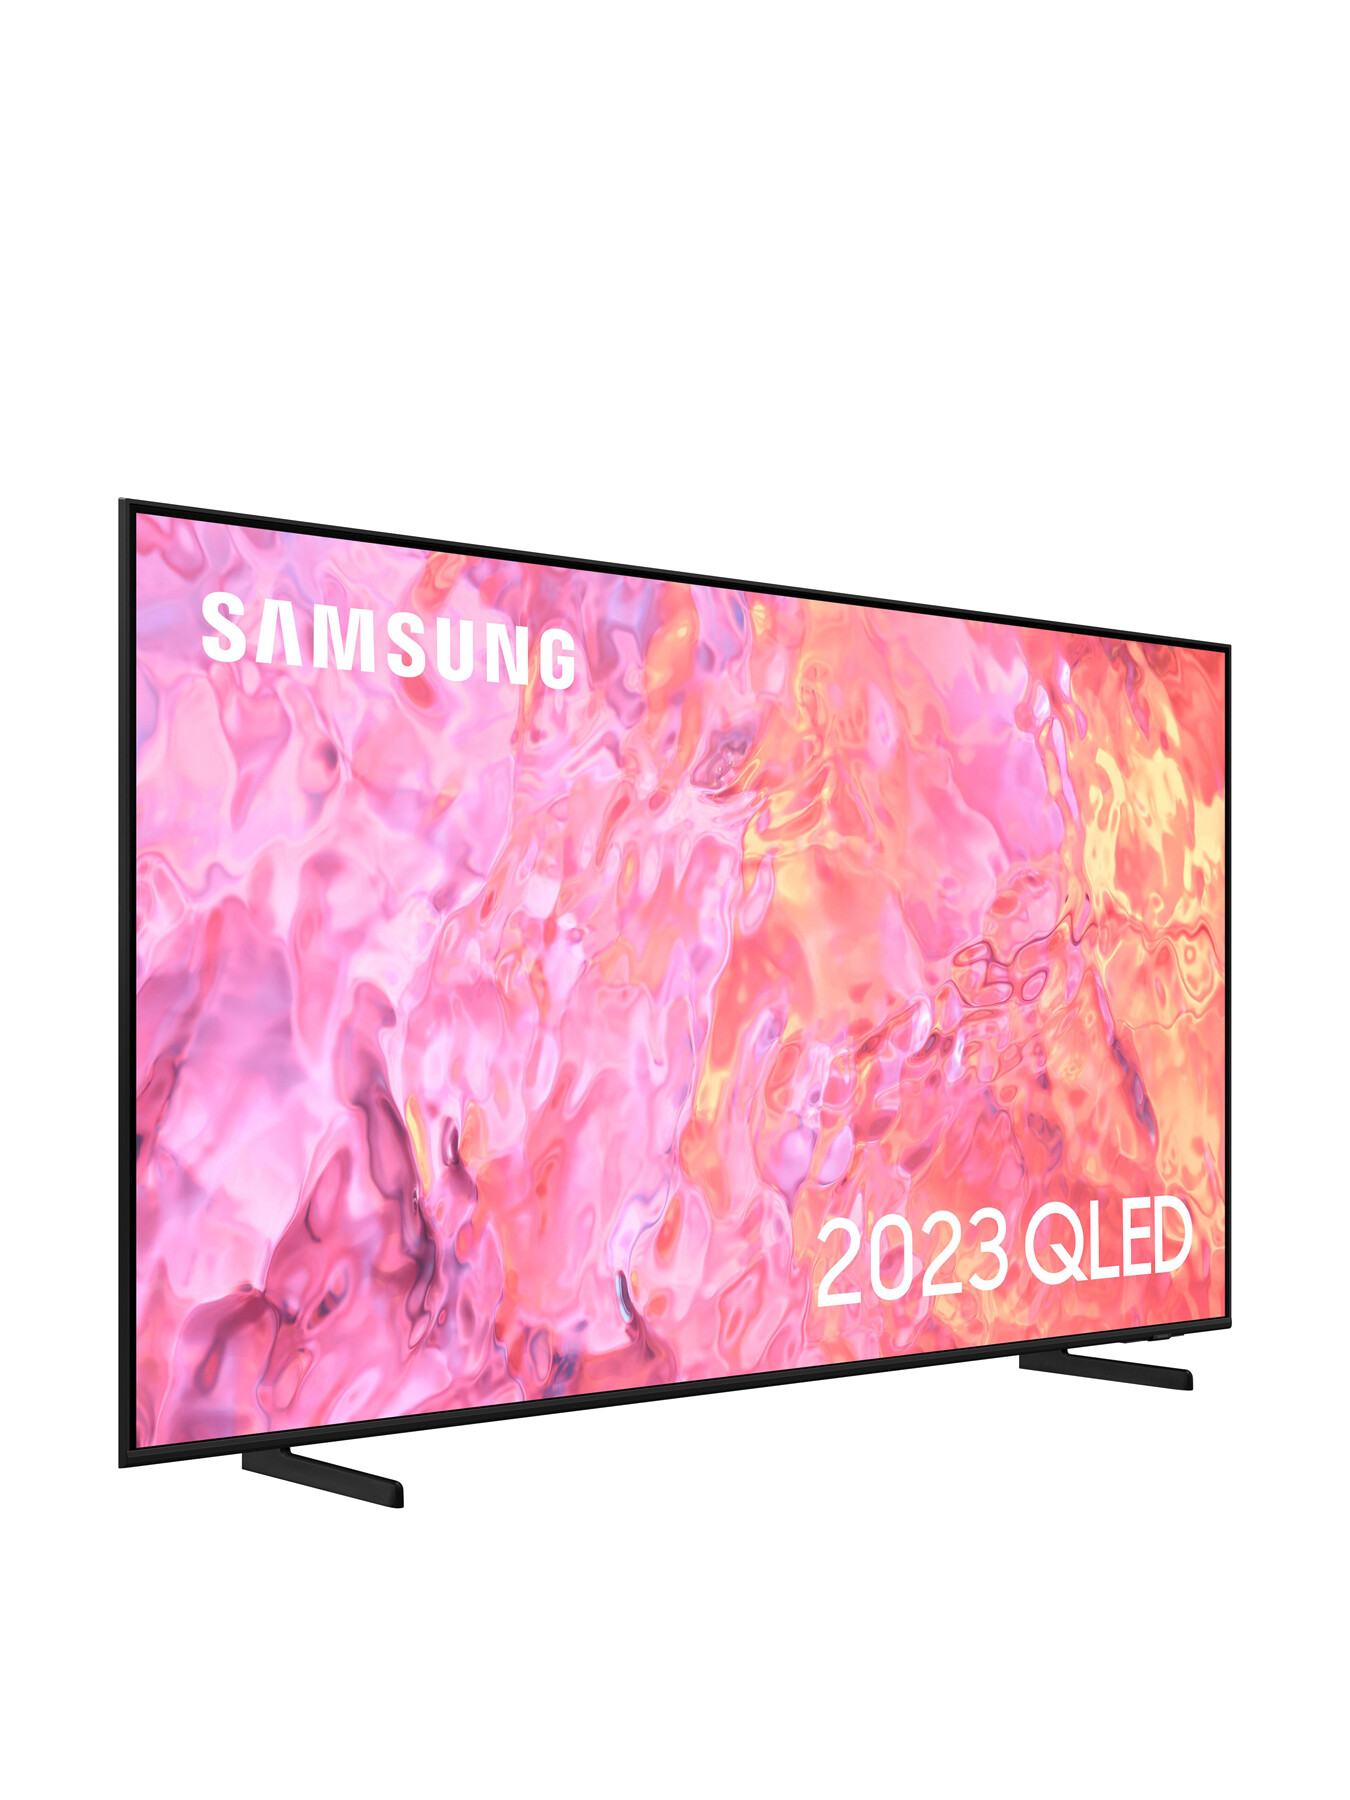 Samsung QE43Q60 QLED HDR 4k Smart TV 43 Inch (2023) | Fenwick